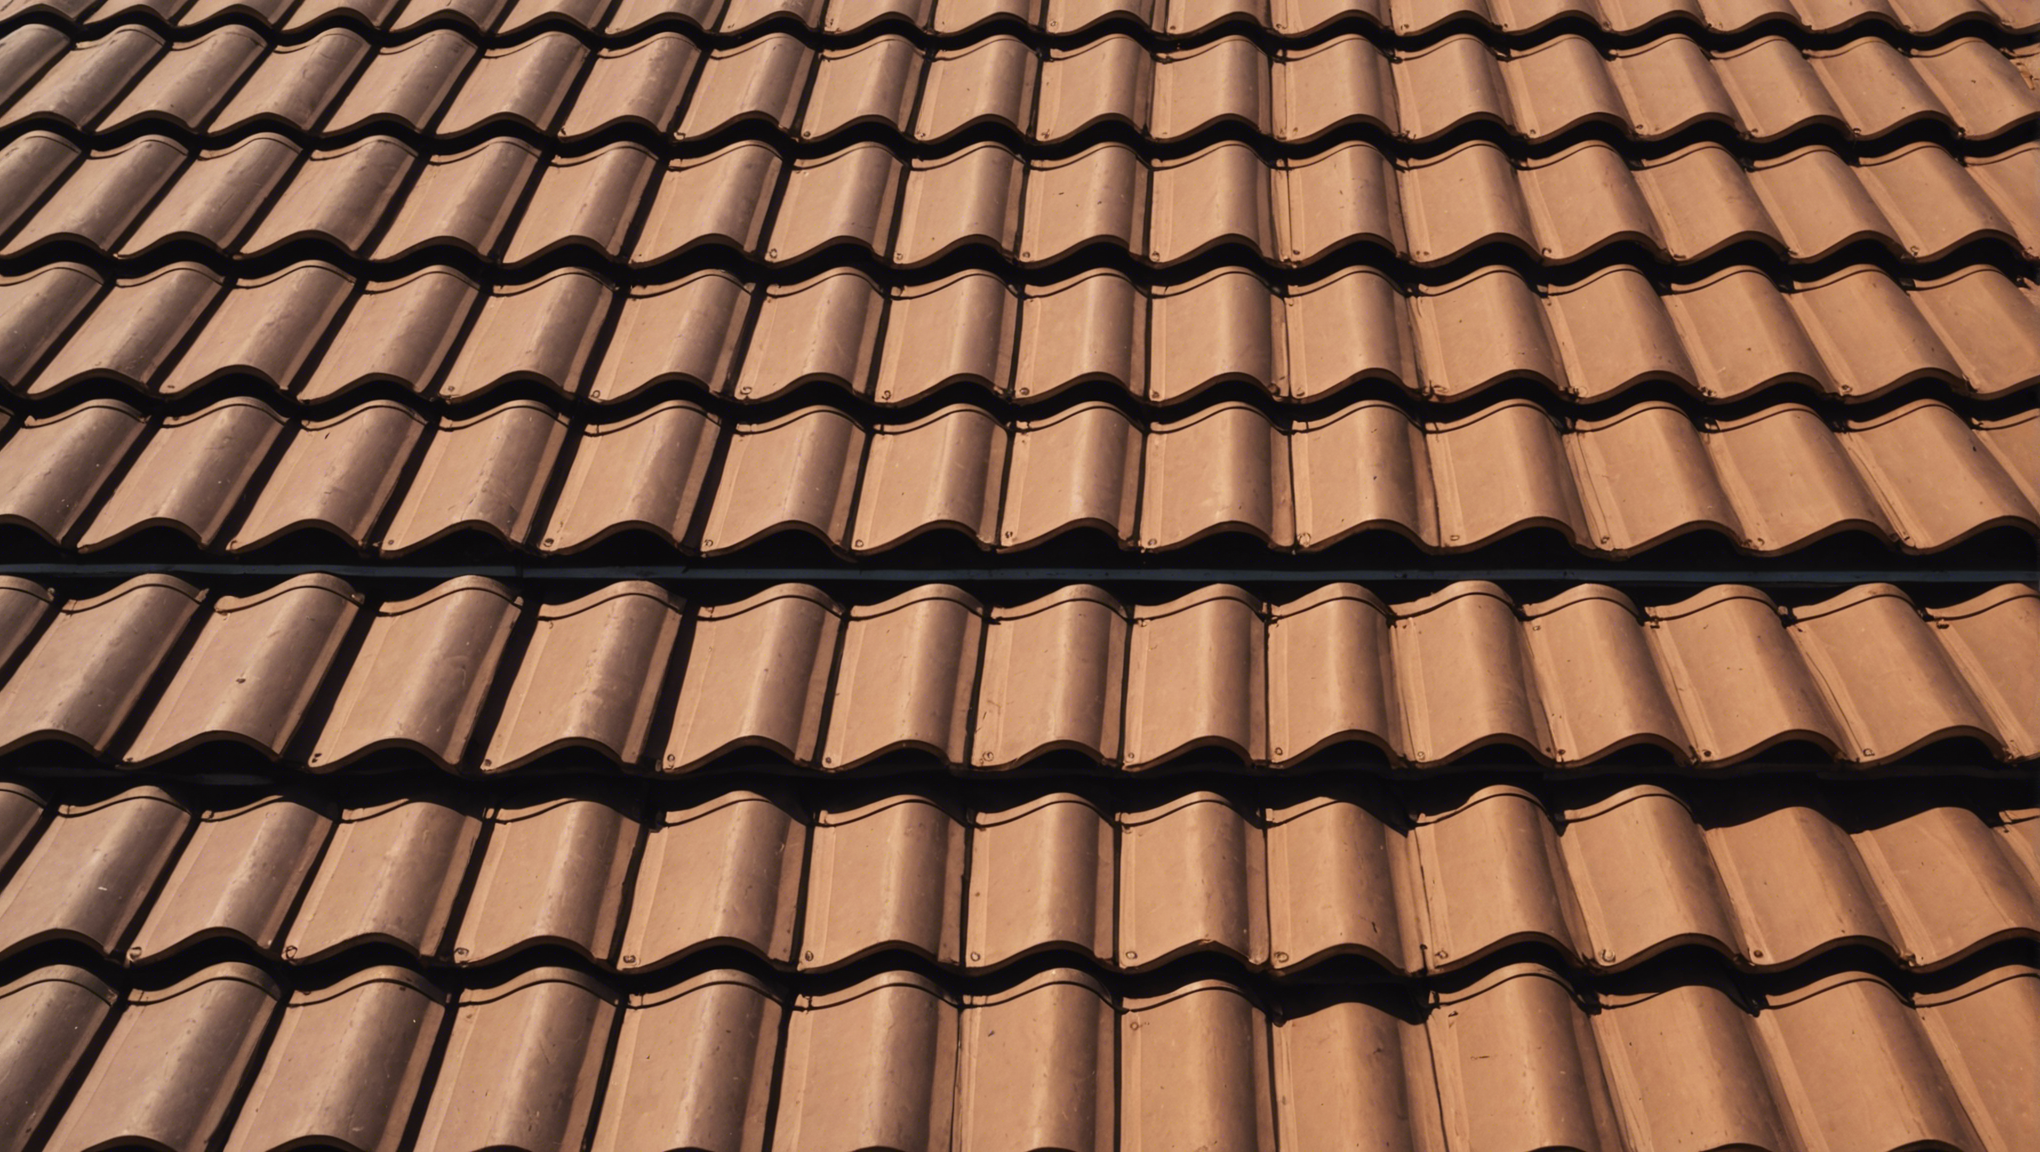 découvrez les avantages et les caractéristiques d'une toiture en tuiles pour une protection optimale de votre maison. trouvez des conseils et des informations pour l'entretien et la rénovation de votre toiture en tuiles.